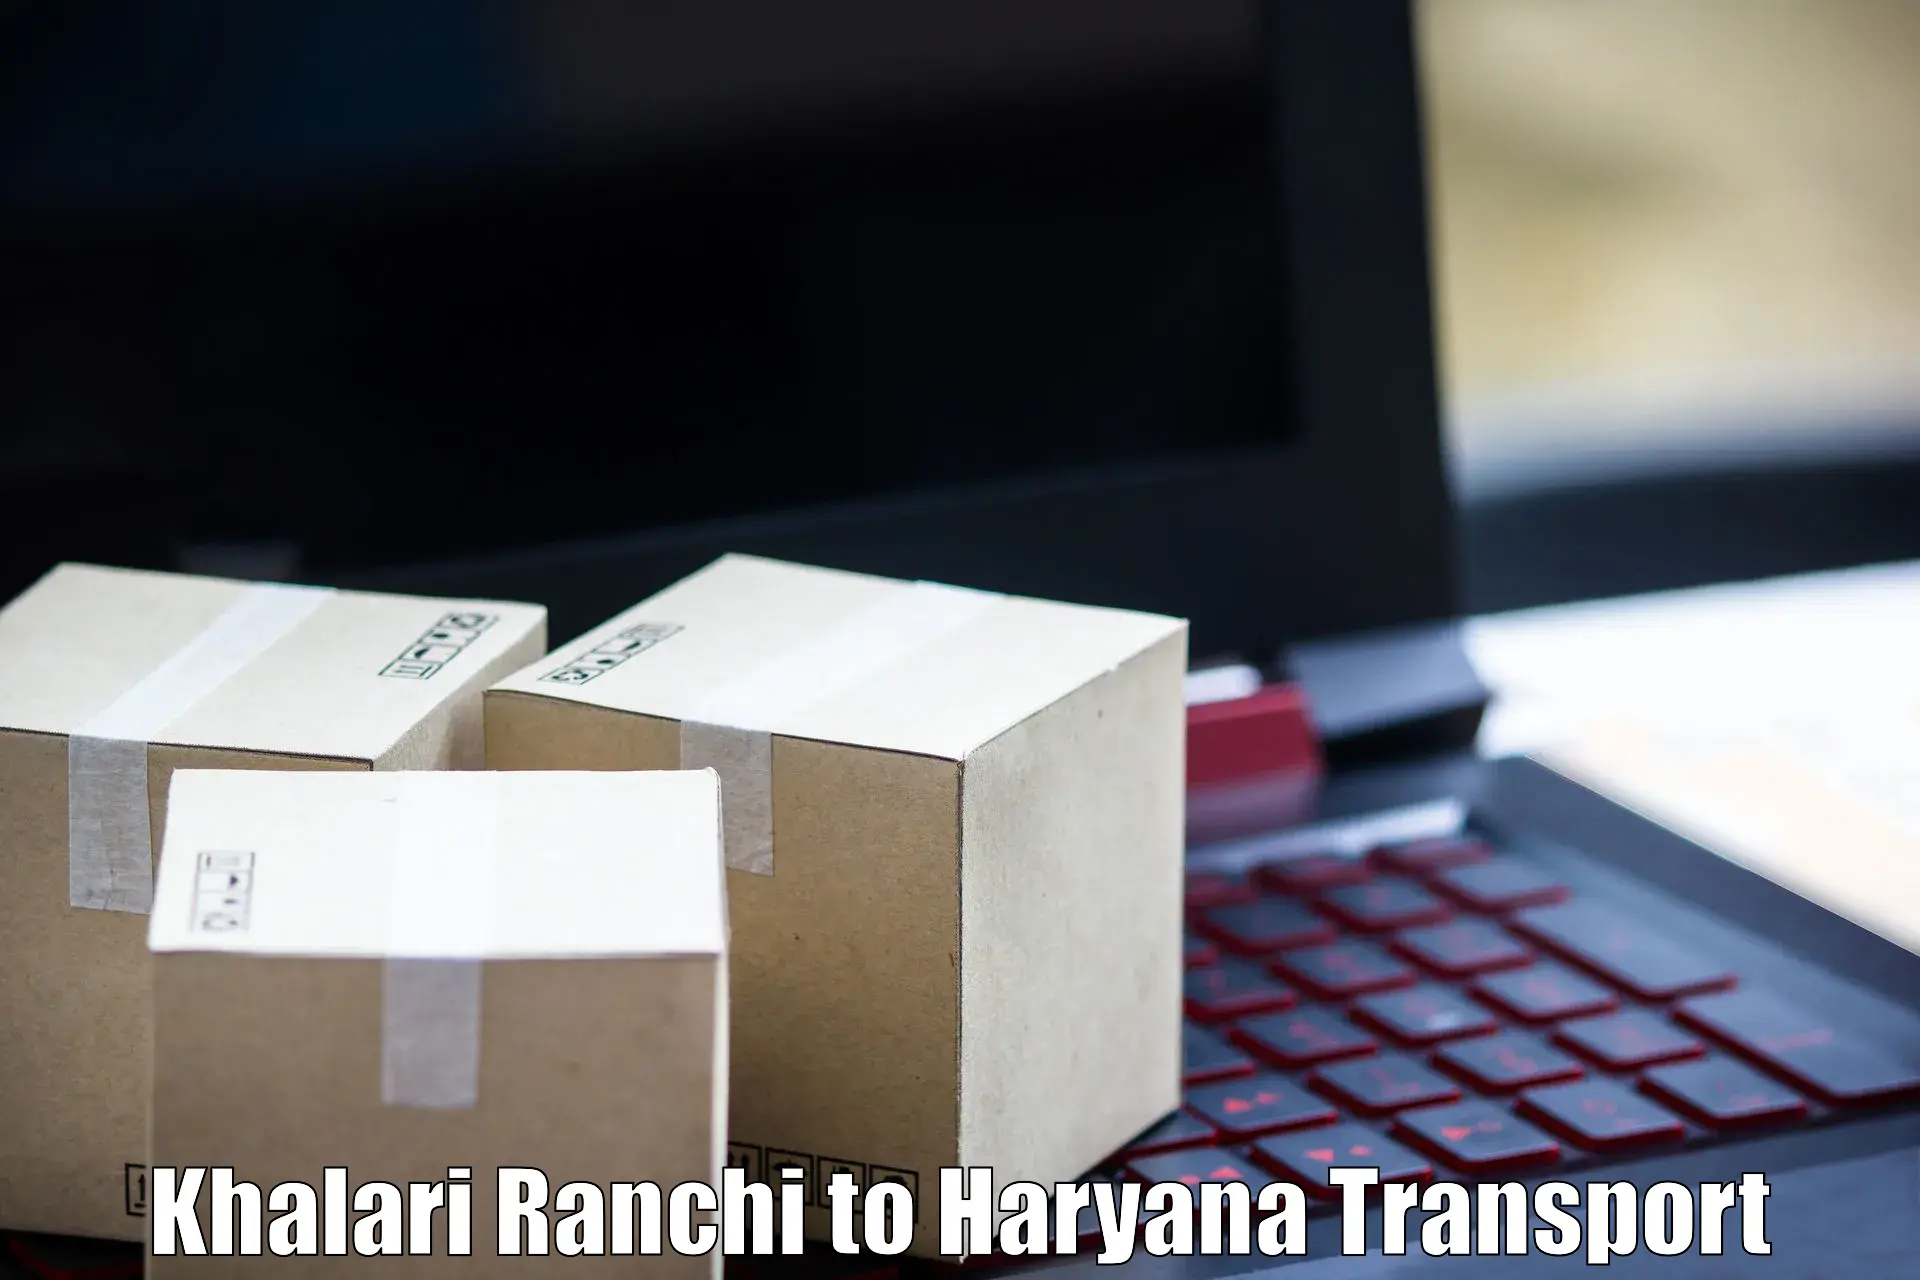 Nationwide transport services Khalari Ranchi to Karnal